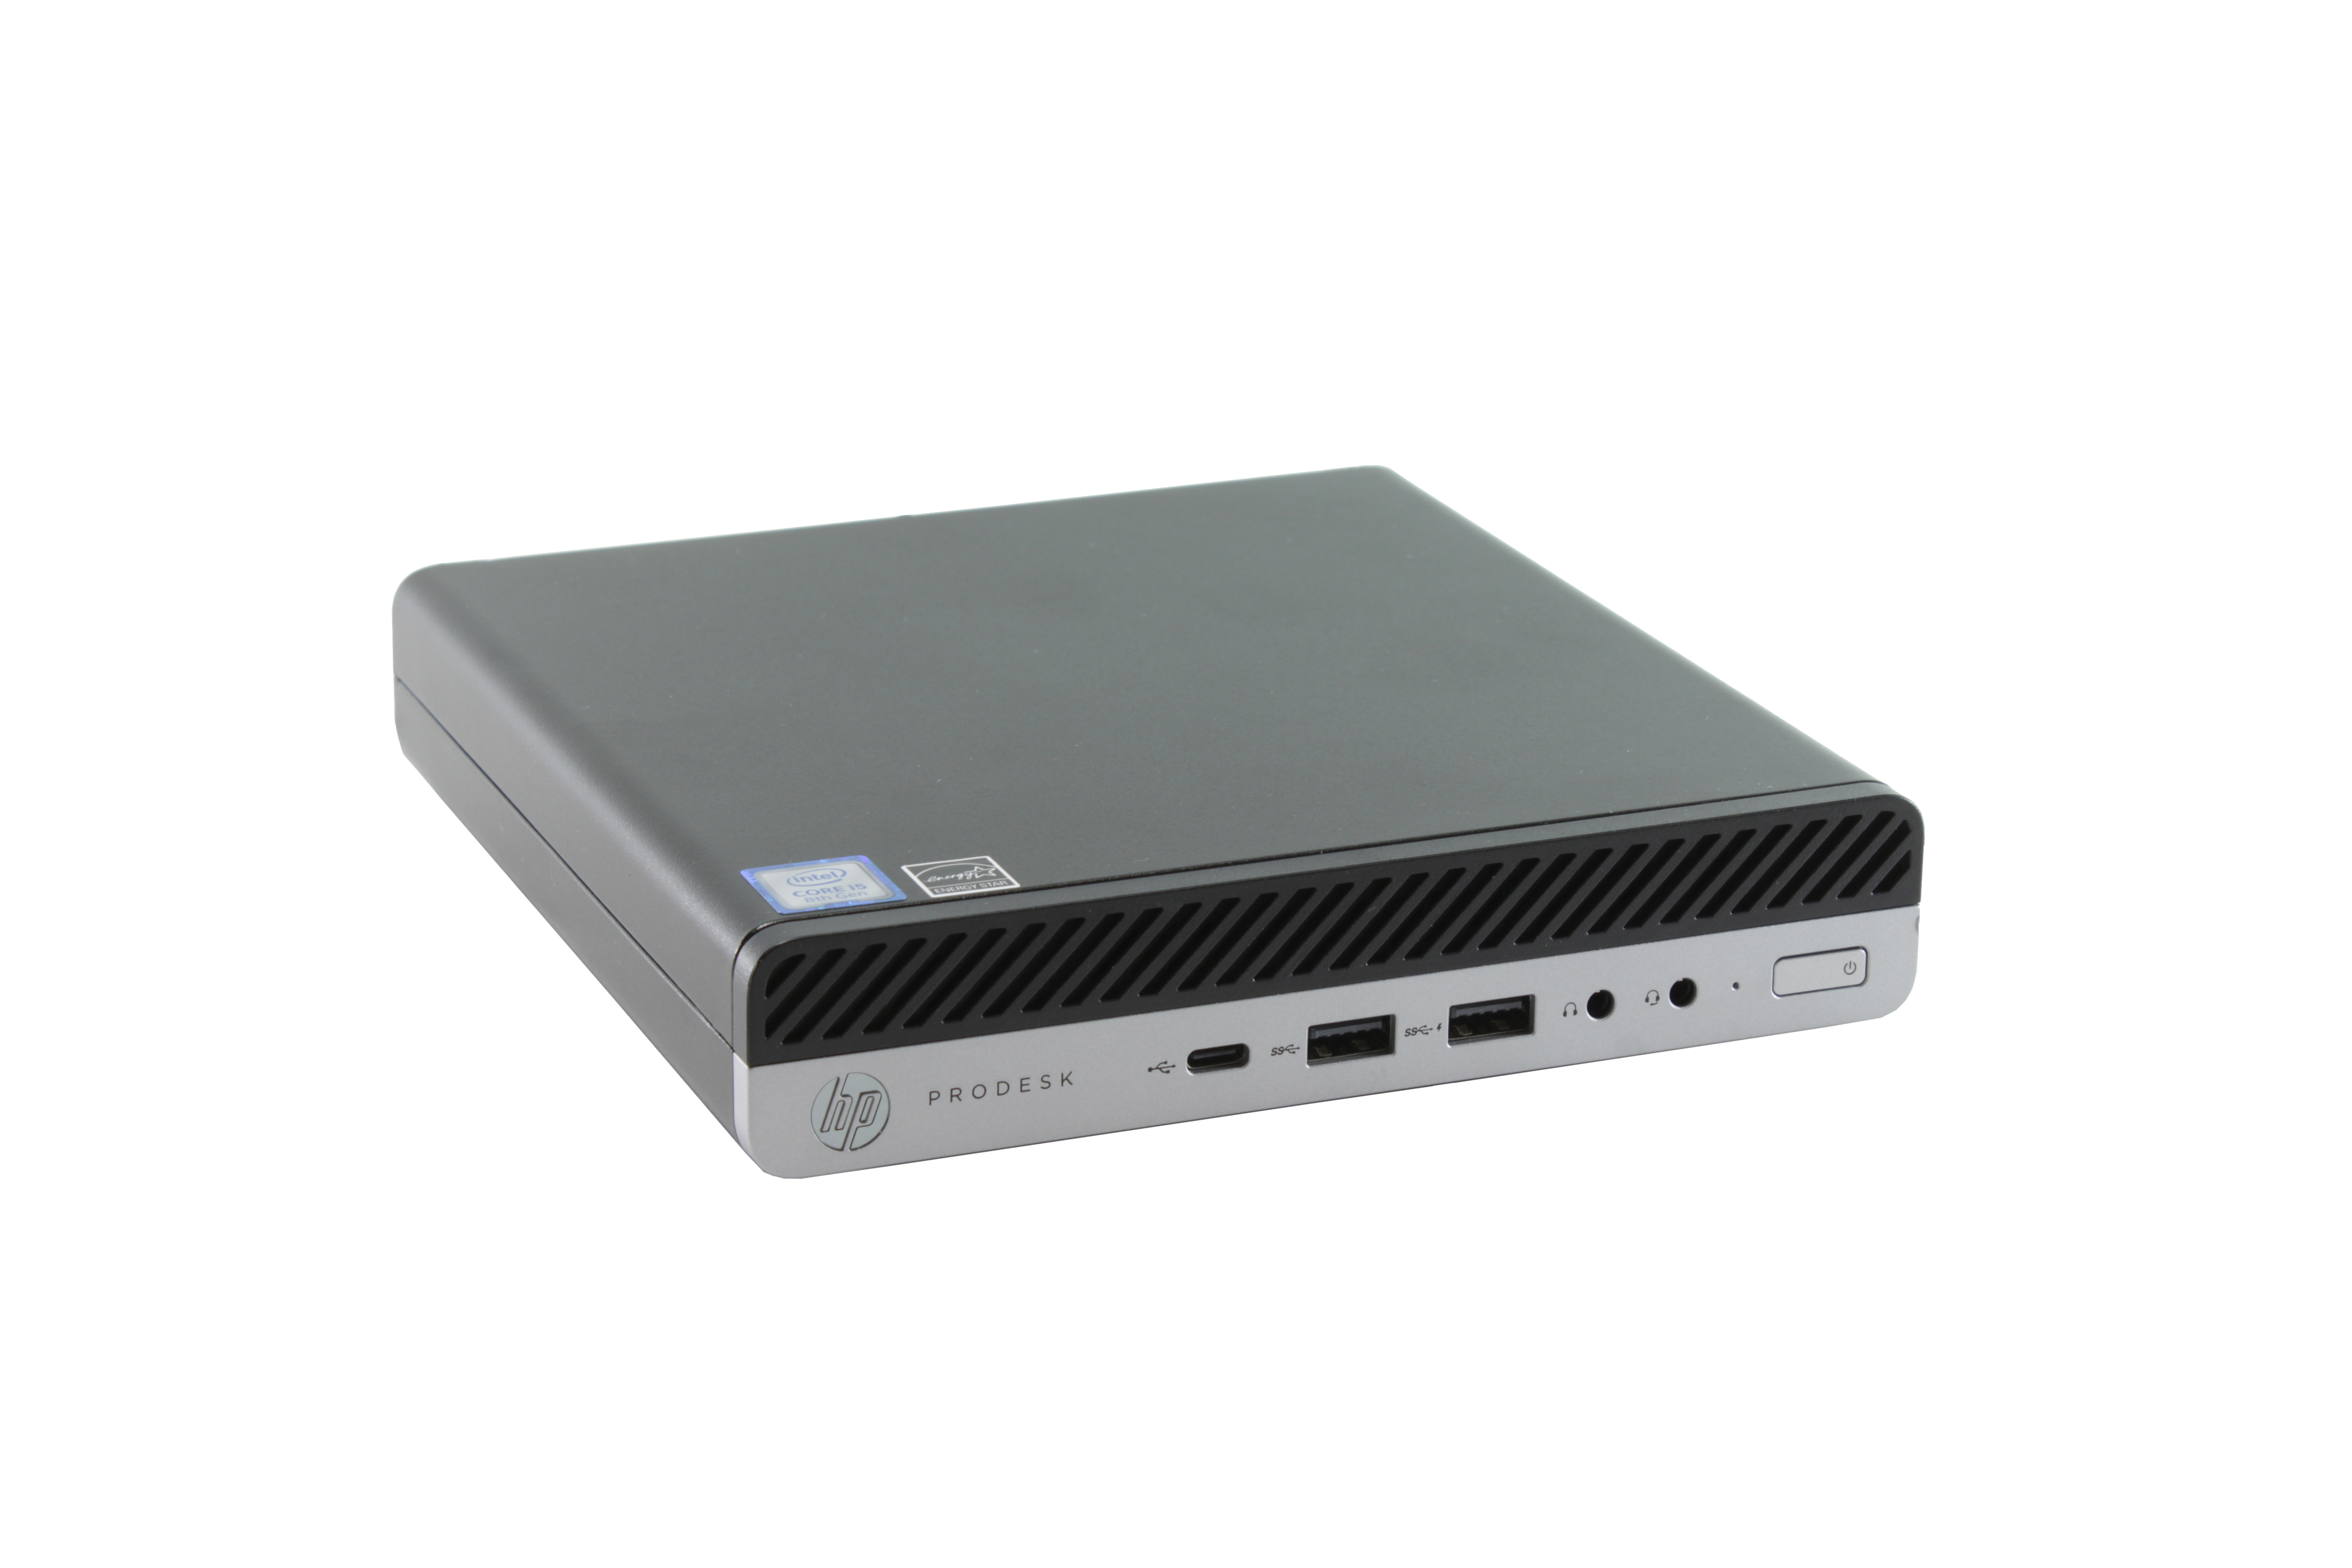 HP ProDesk 600 G4 DM Intel Core I5-8600T 2.3GHz SSD 256Gb RAM 8Gb Win10 1B231UT#ABA